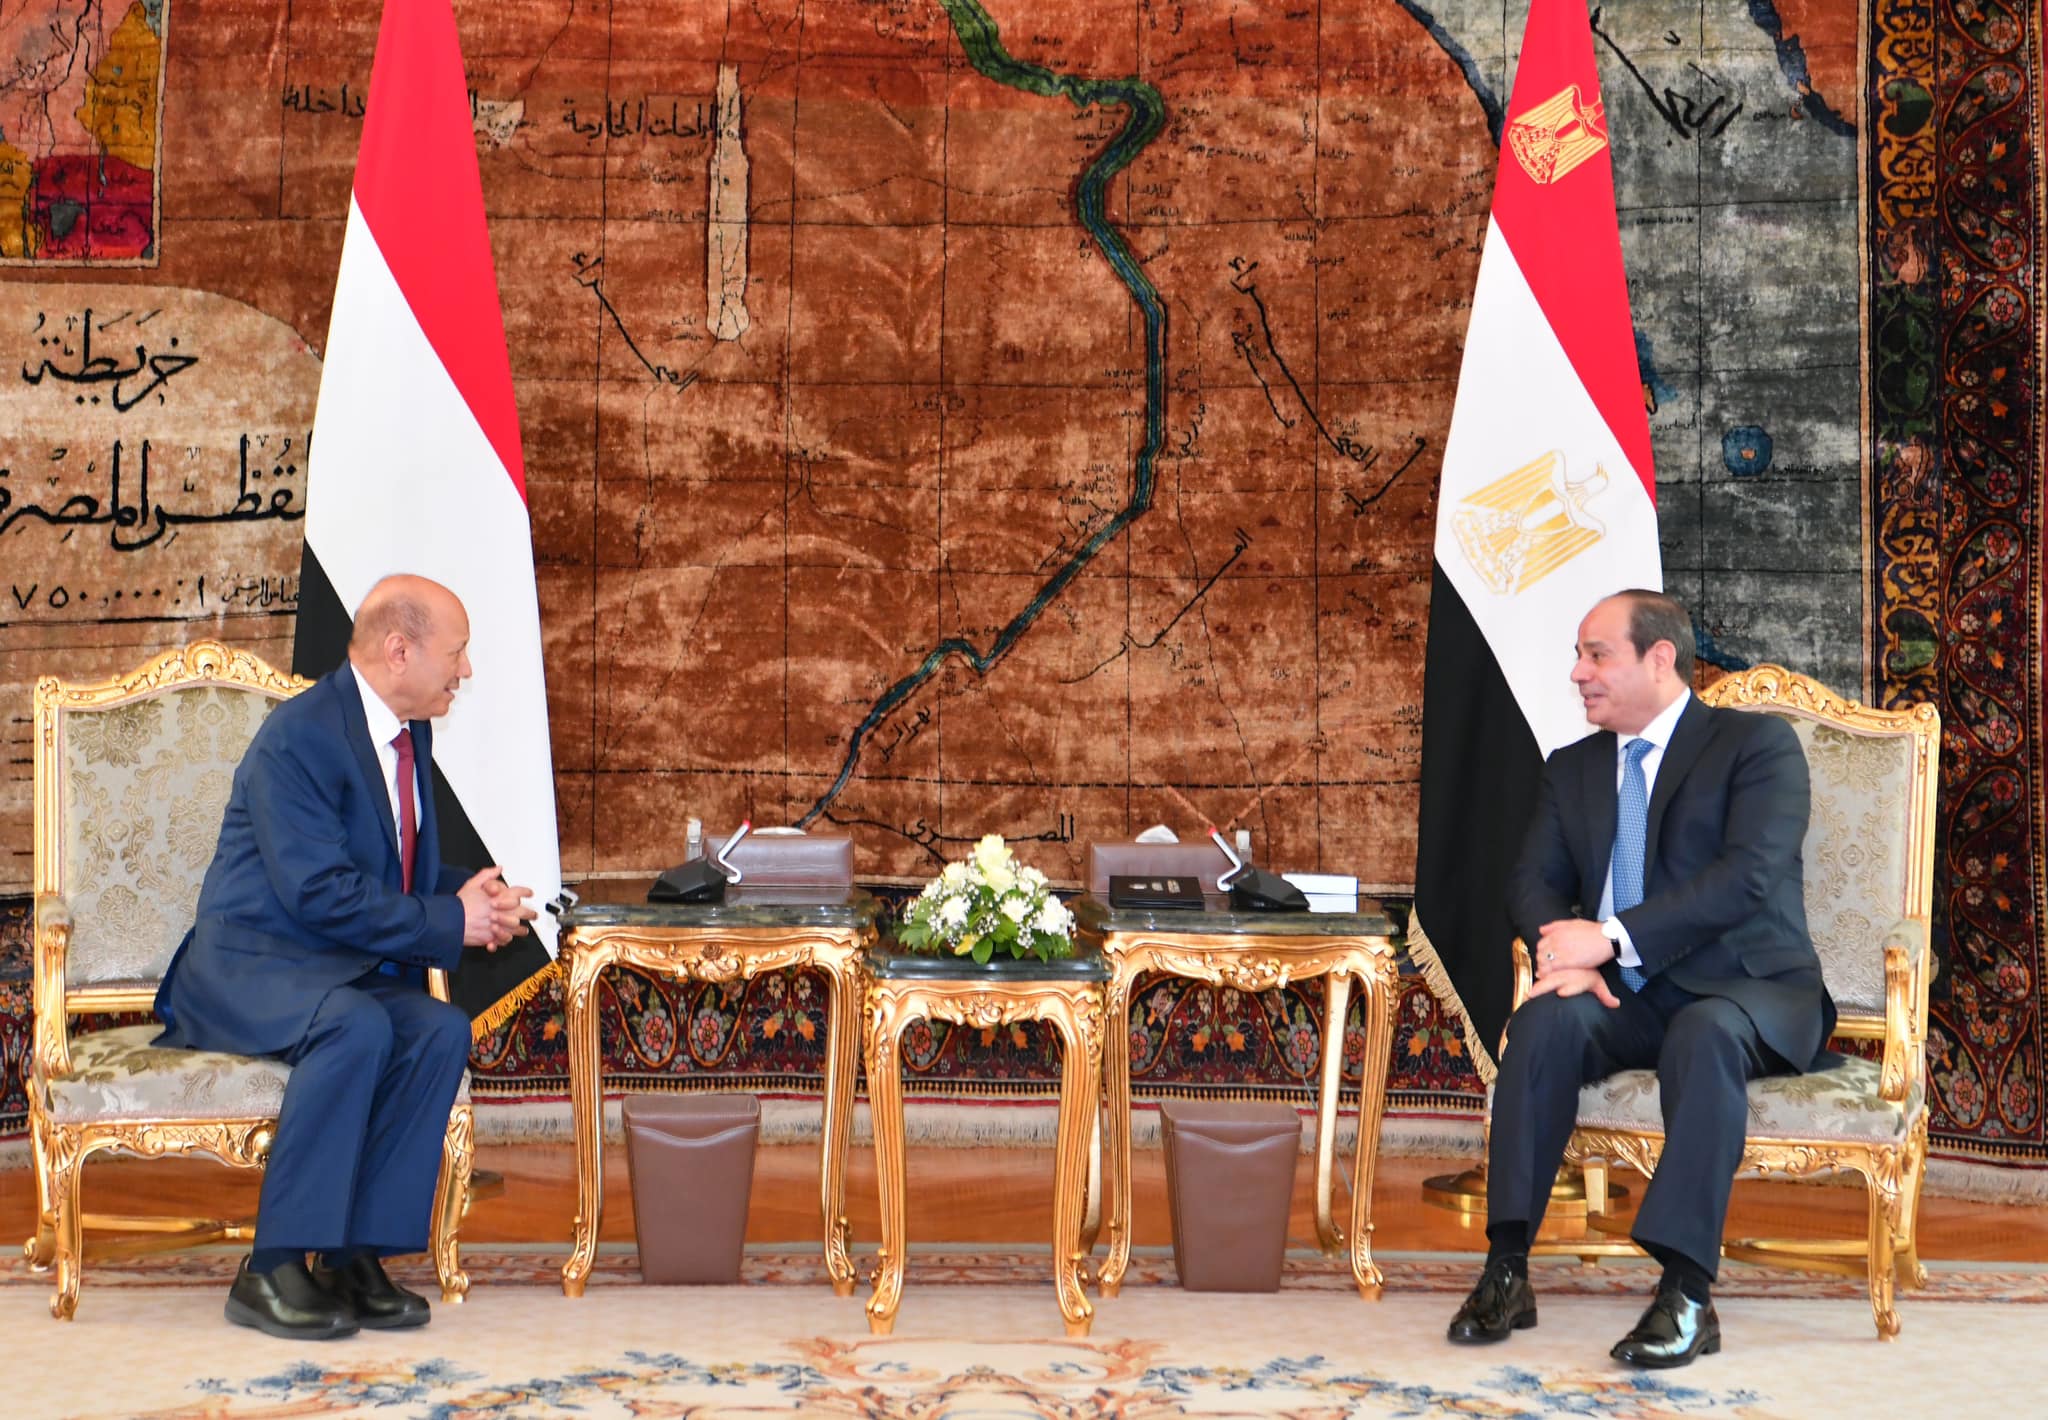 الرئيس  المصري عبد الفتاح السيسي يلتقي رئيس مجلس القيادة الرئاسي بالجمهورية اليمنية